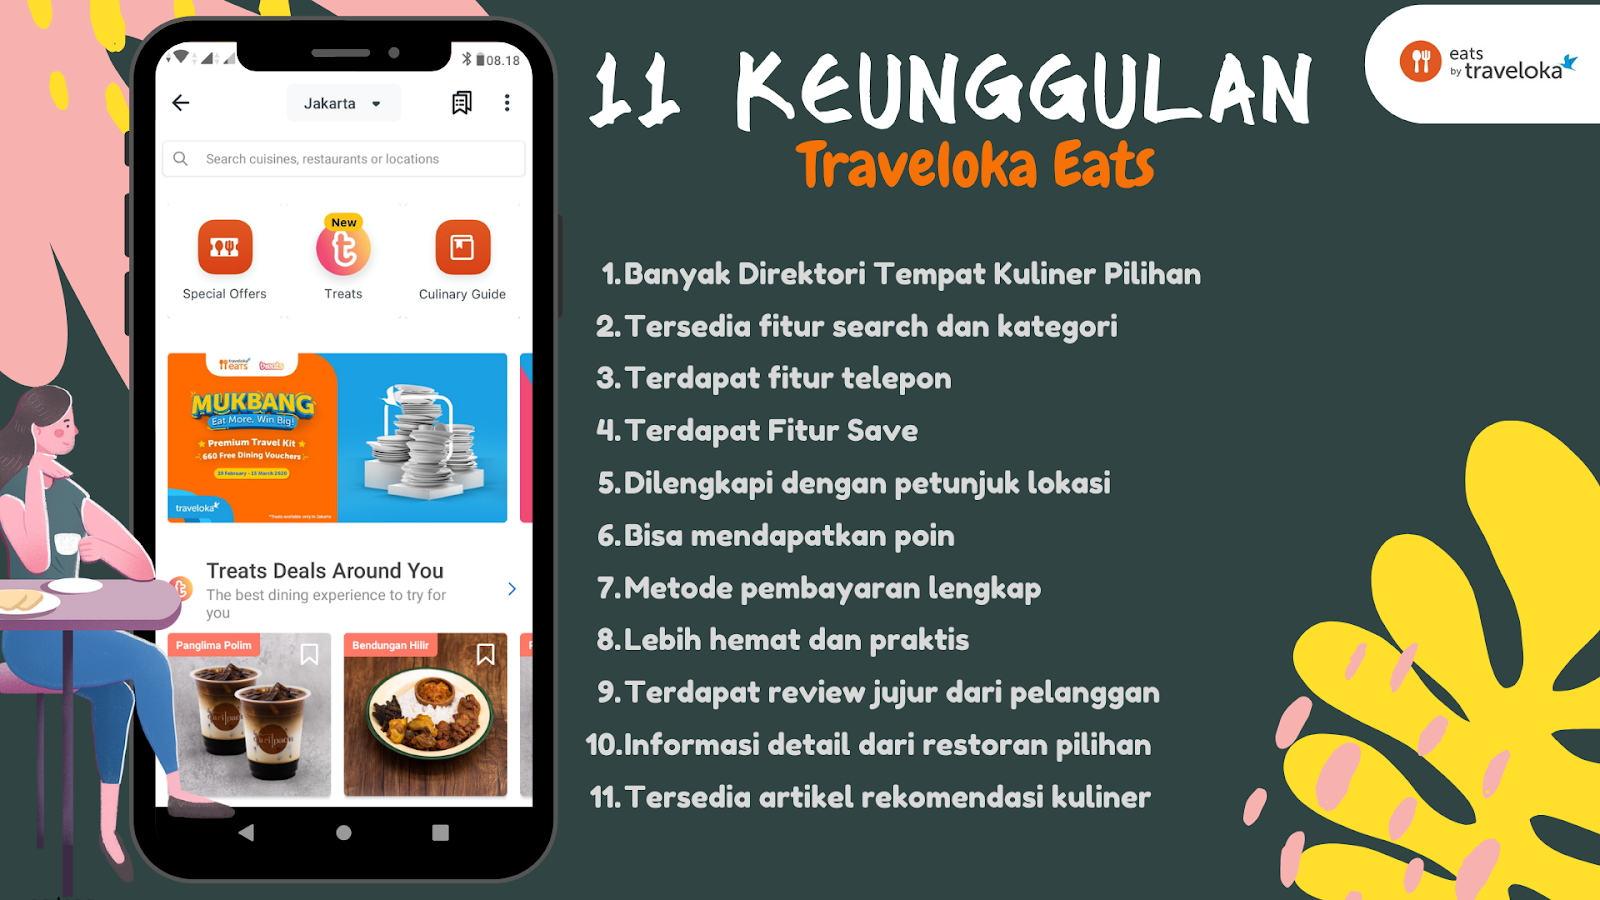 Keunggulan Traveloka Eats